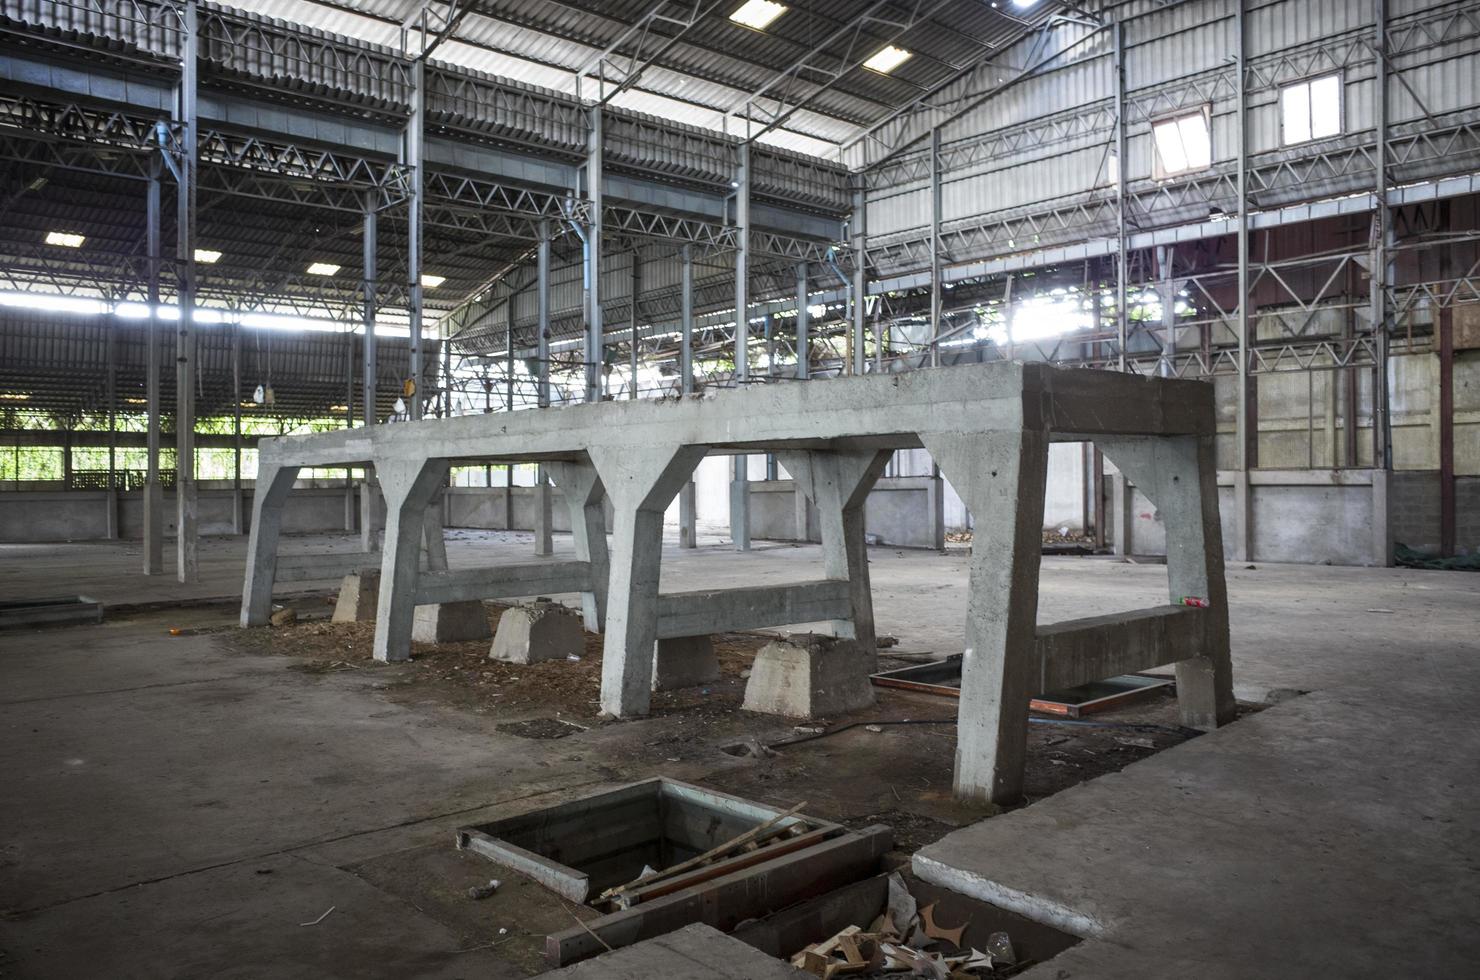 sfondo di una fabbrica abbandonata foto